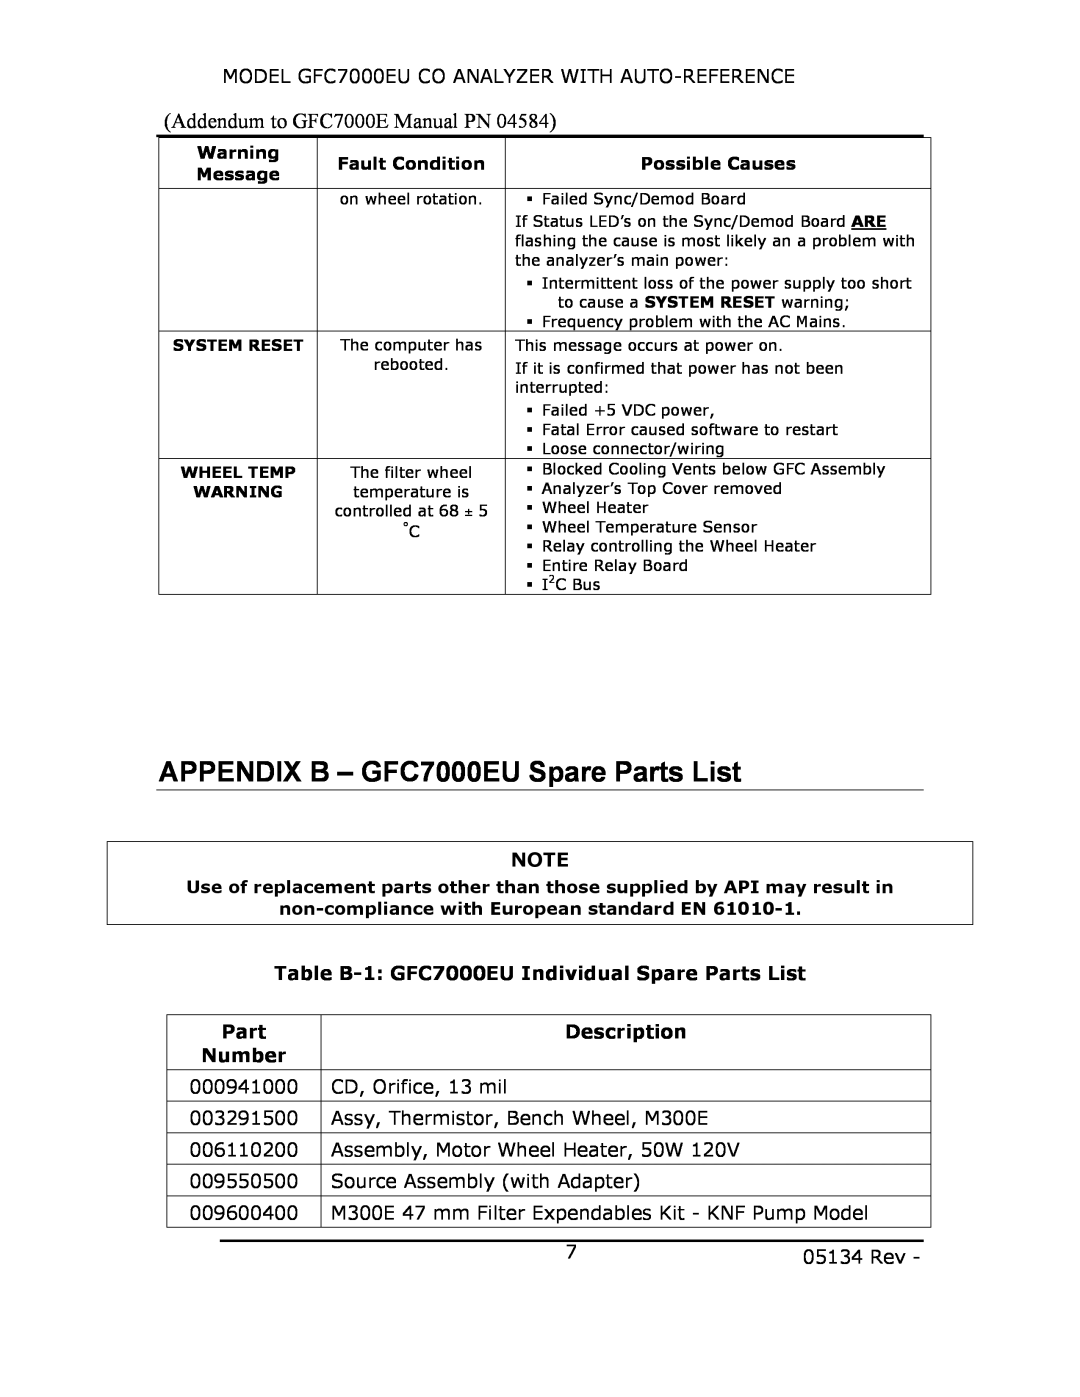 Teledyne APPENDIX B - GFC7000EU Spare Parts List, Table B-1 GFC7000EU Individual Spare Parts List, Description, Number 